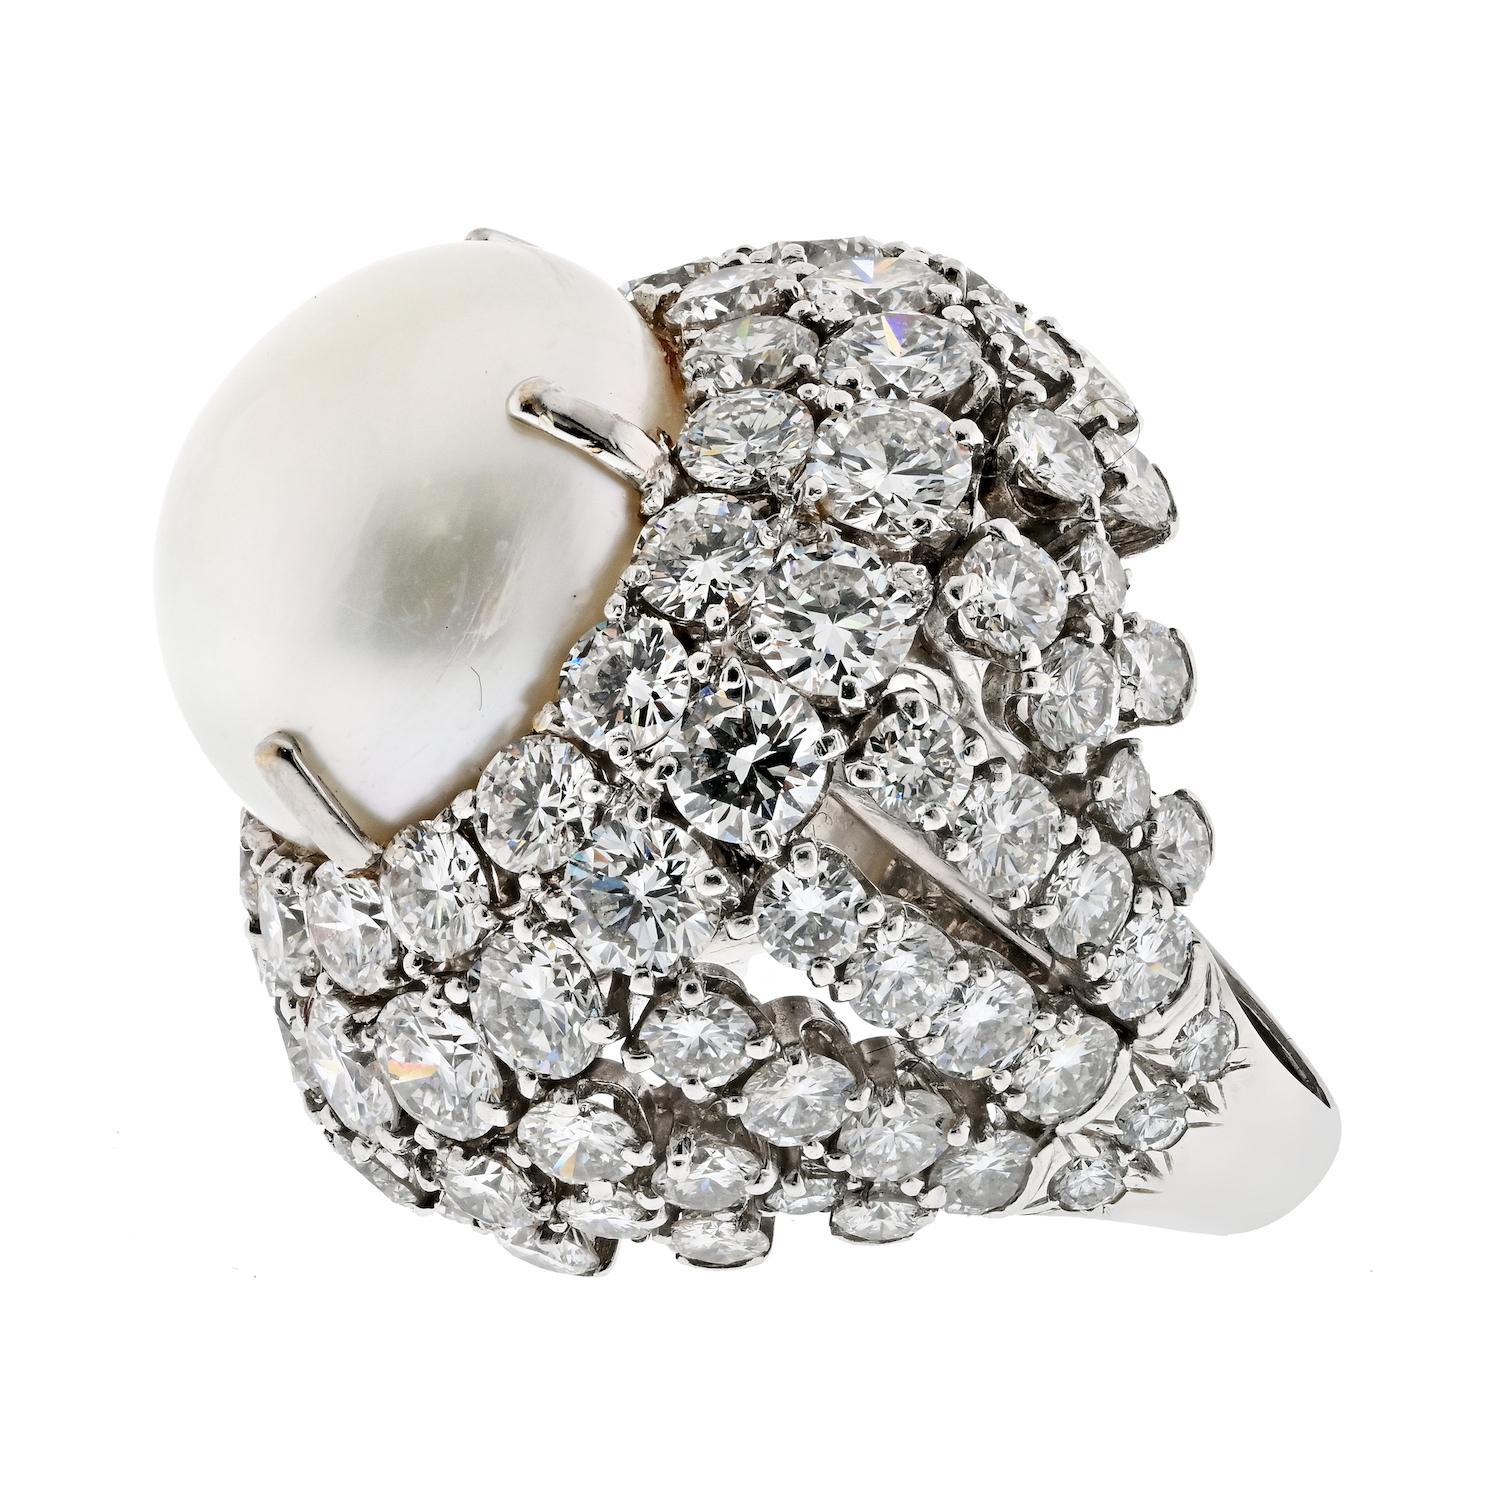 La bague cocktail Diamond and South Sea Pearl Bombe de David Webb est un bijou extraordinaire qui respire le luxe et la sophistication. Réalisée en platine et montée avec une seule grande perle blanche des mers du Sud (17 mm), cette bague est une